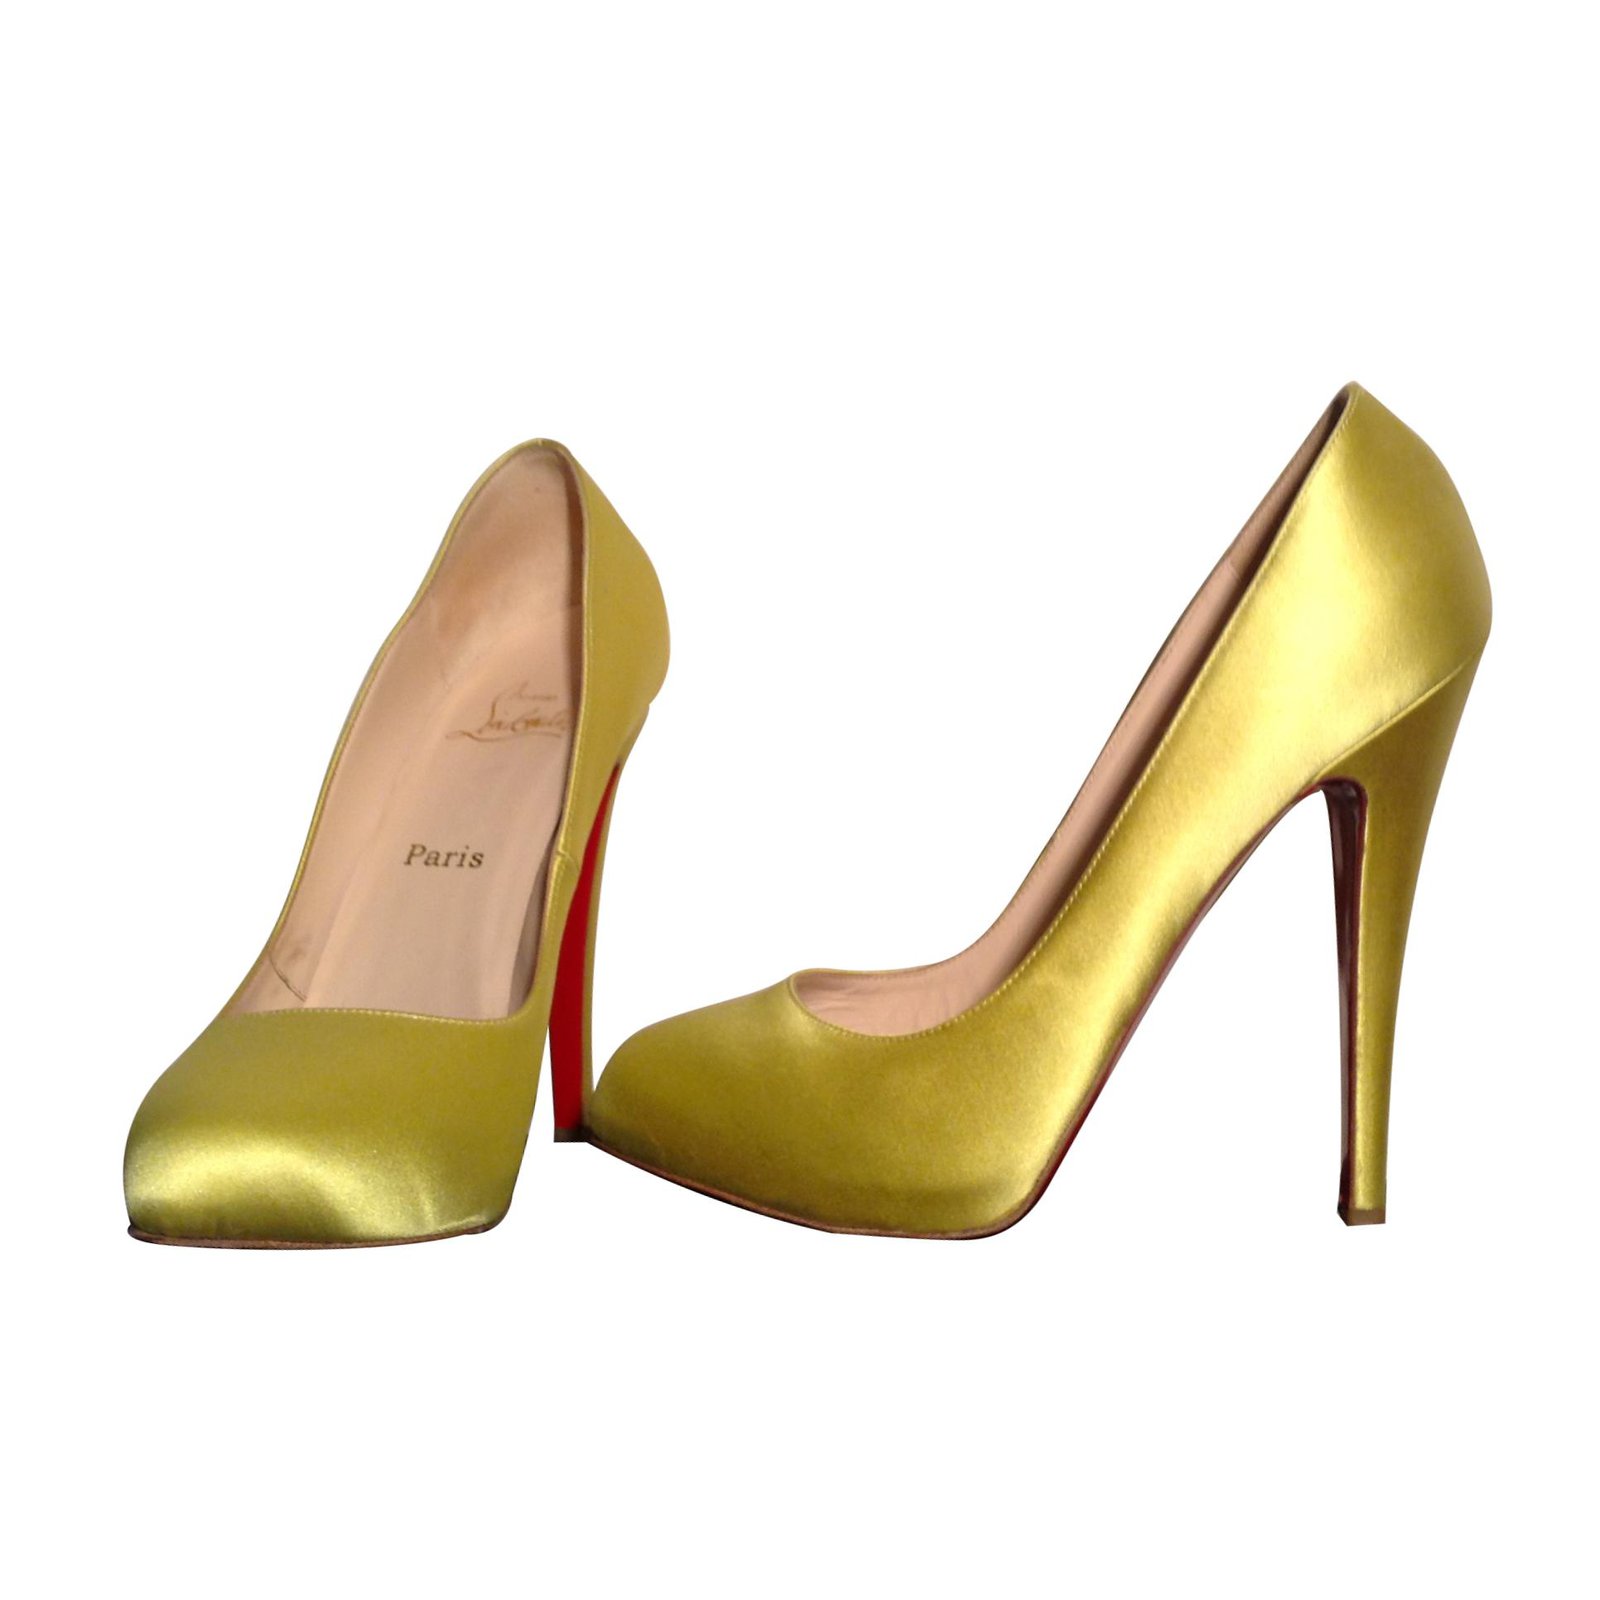 louboutin yellow heels